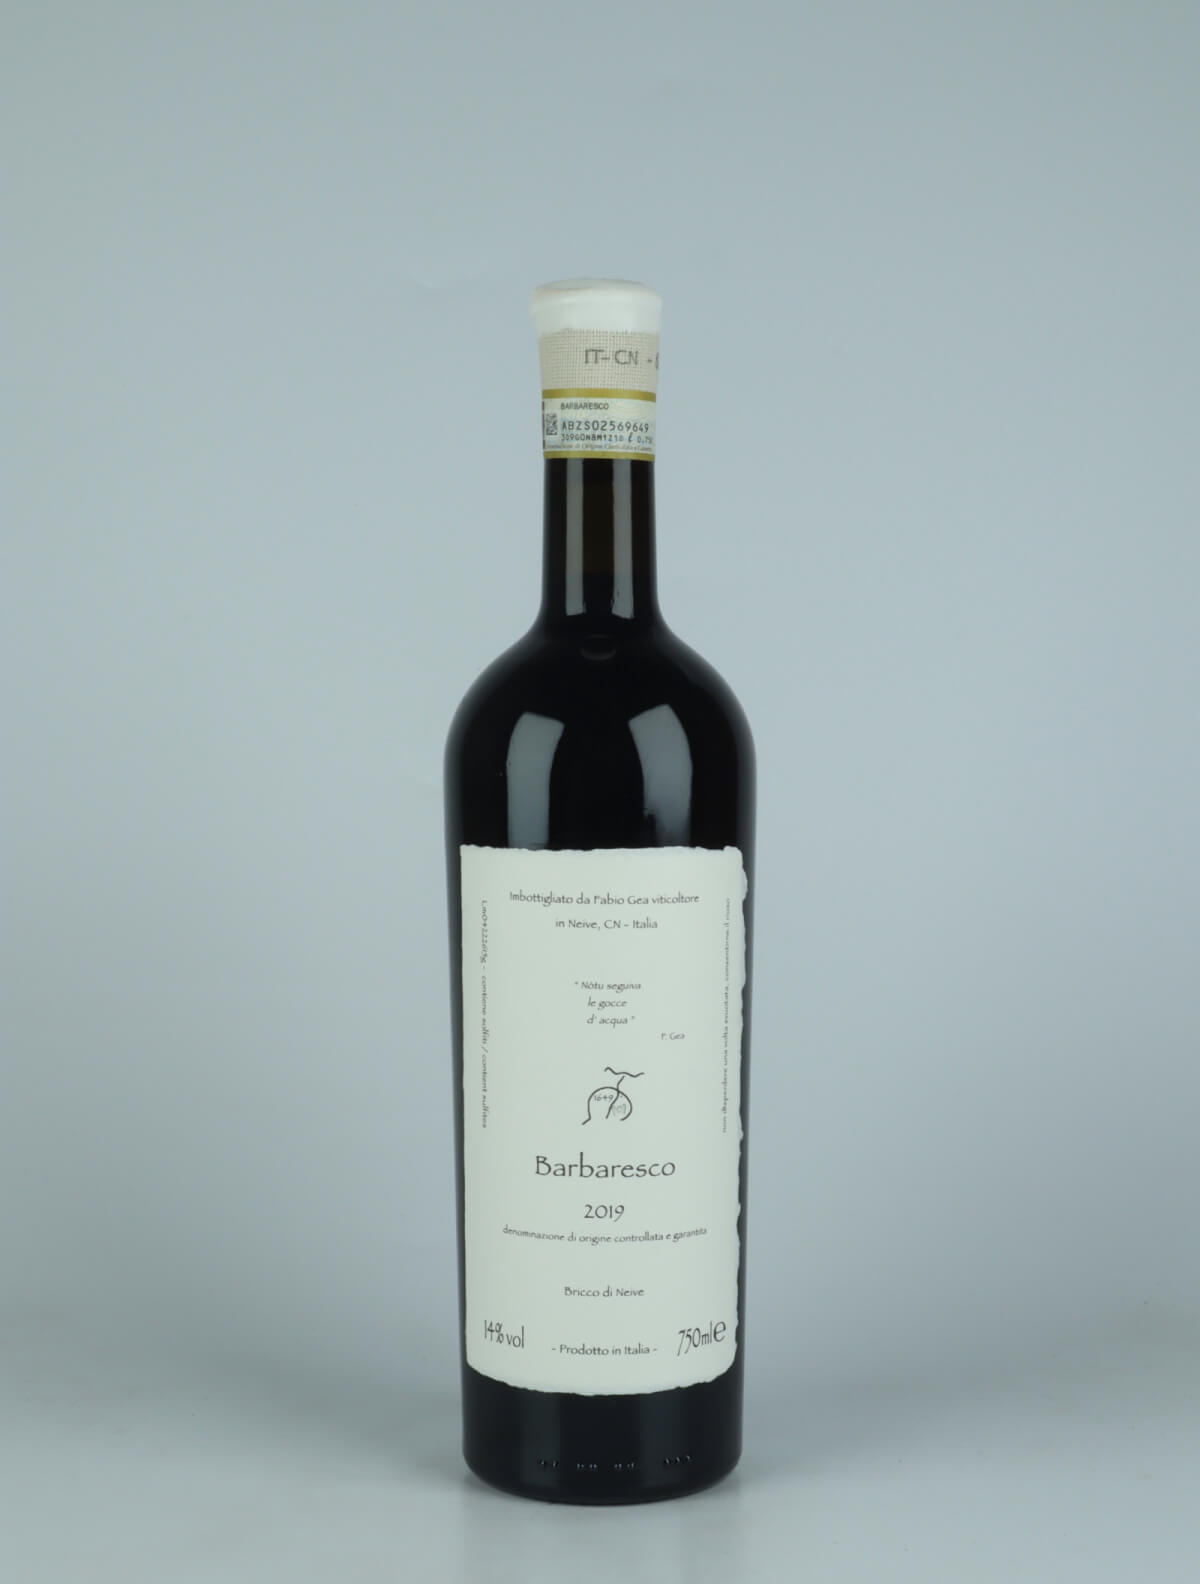 En flaske 2019 Barbaresco (Nòtu seguiva le gocce d'acqua) Rødvin fra Fabio Gea, Piemonte i Italien